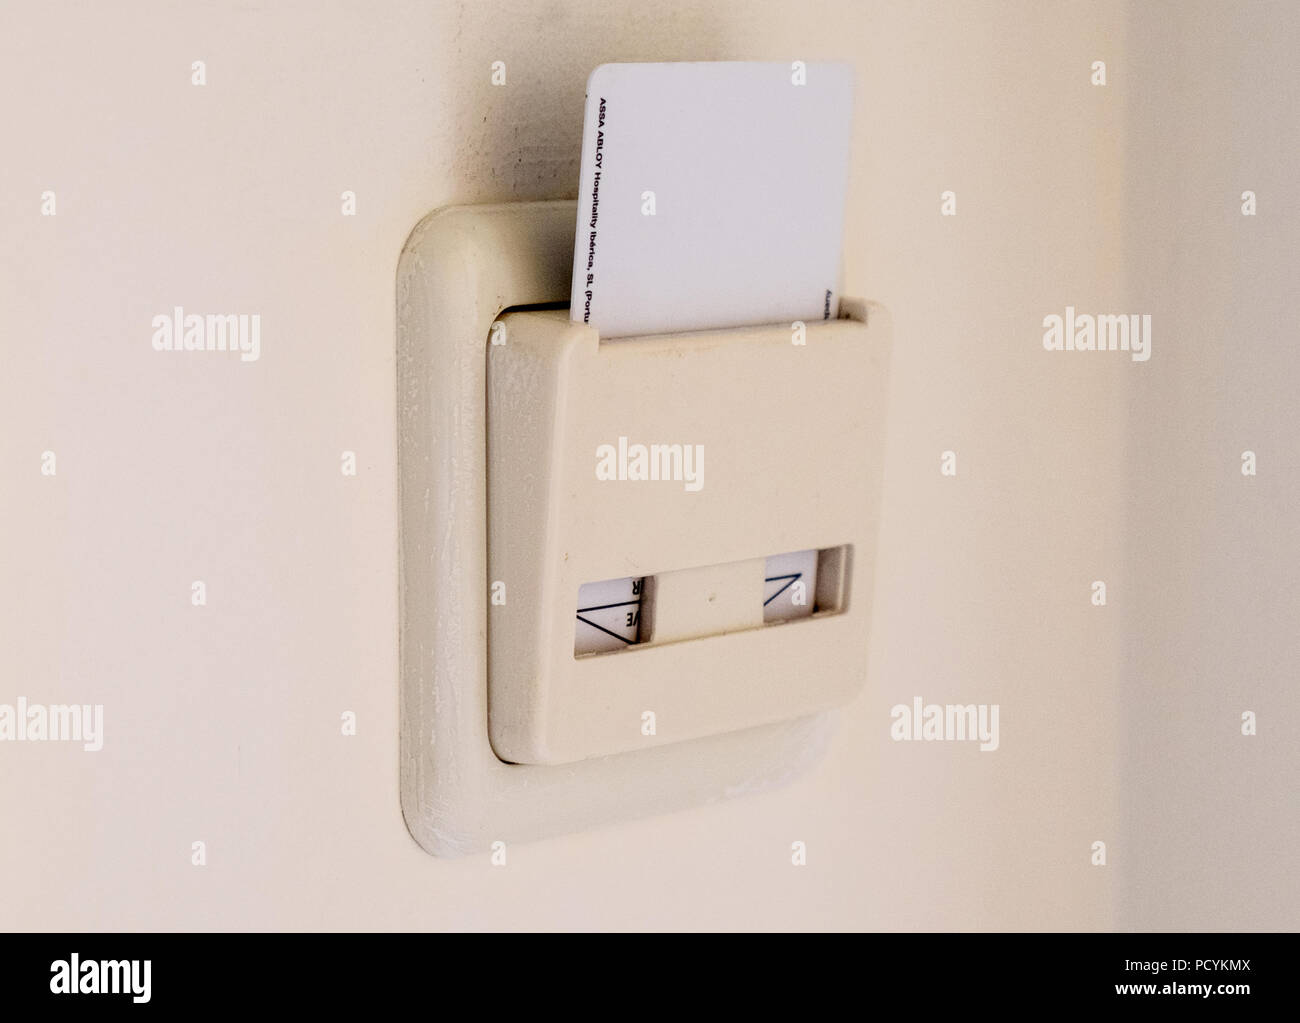 Tarjeta llave de hotel situado en una habitación para encender la alimentación Foto de stock